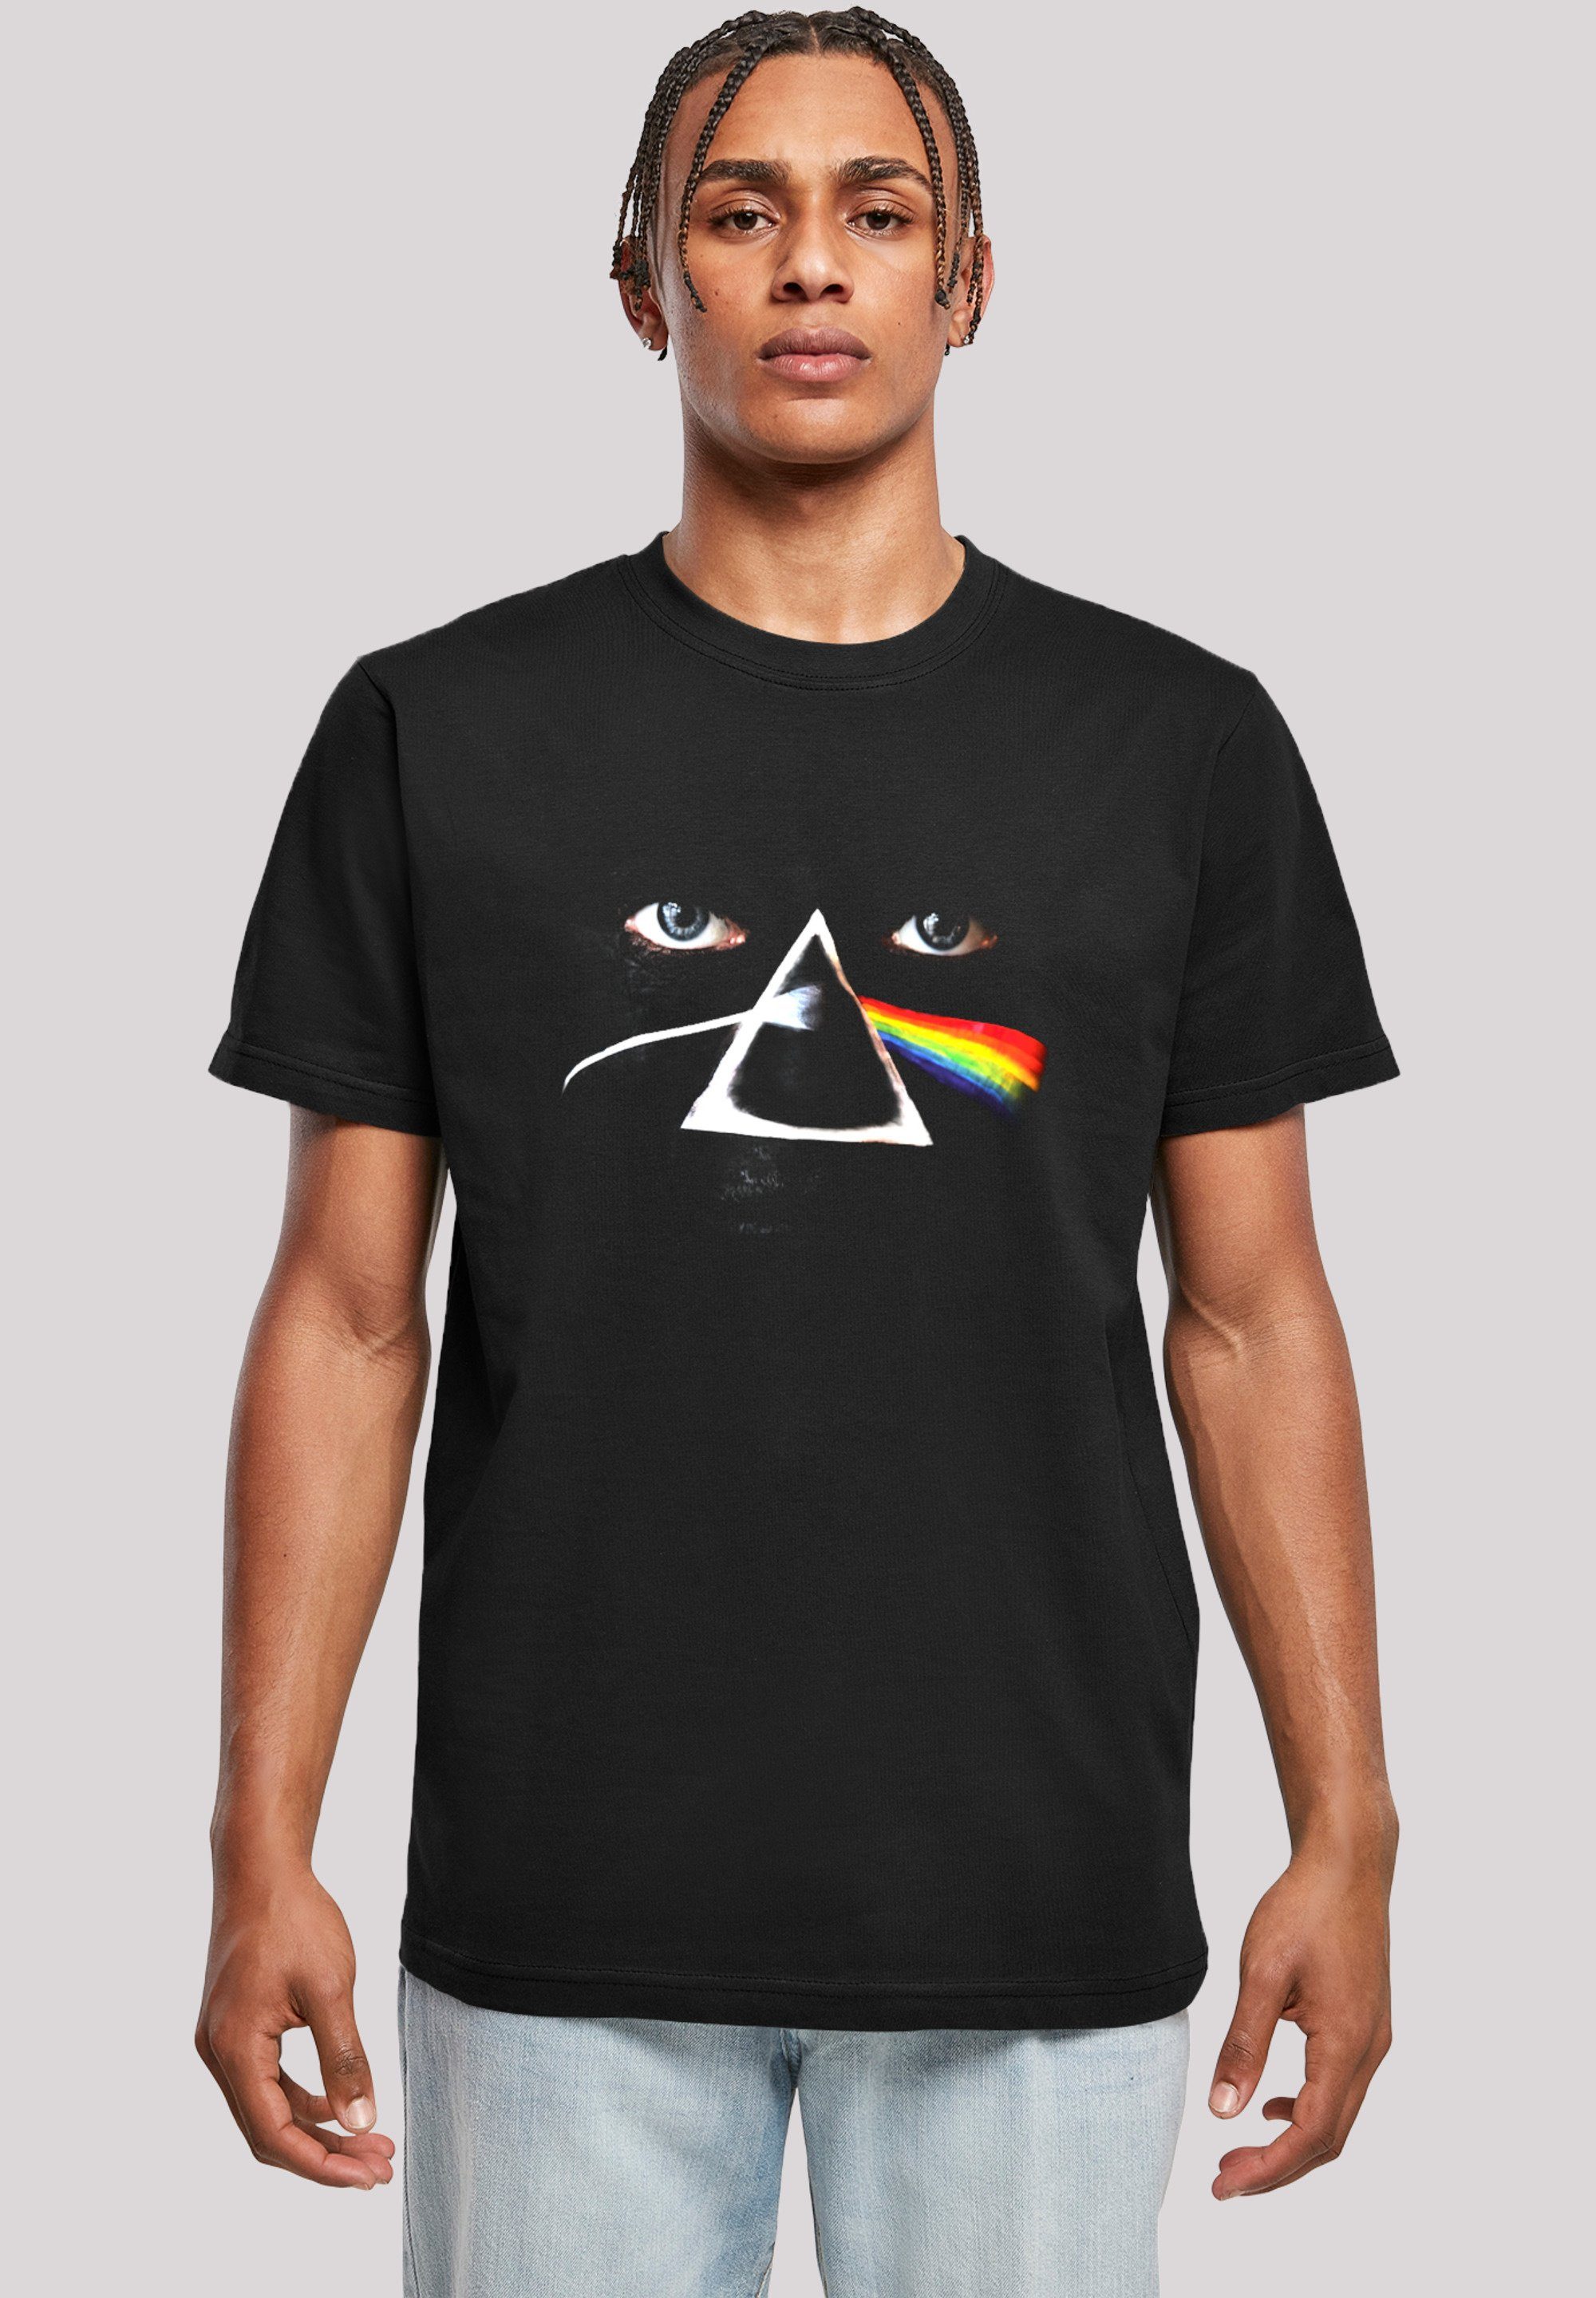 F4NT4STIC T-Shirt Pink Floyd Prism Shirt Rock Musik Print | T-Shirts